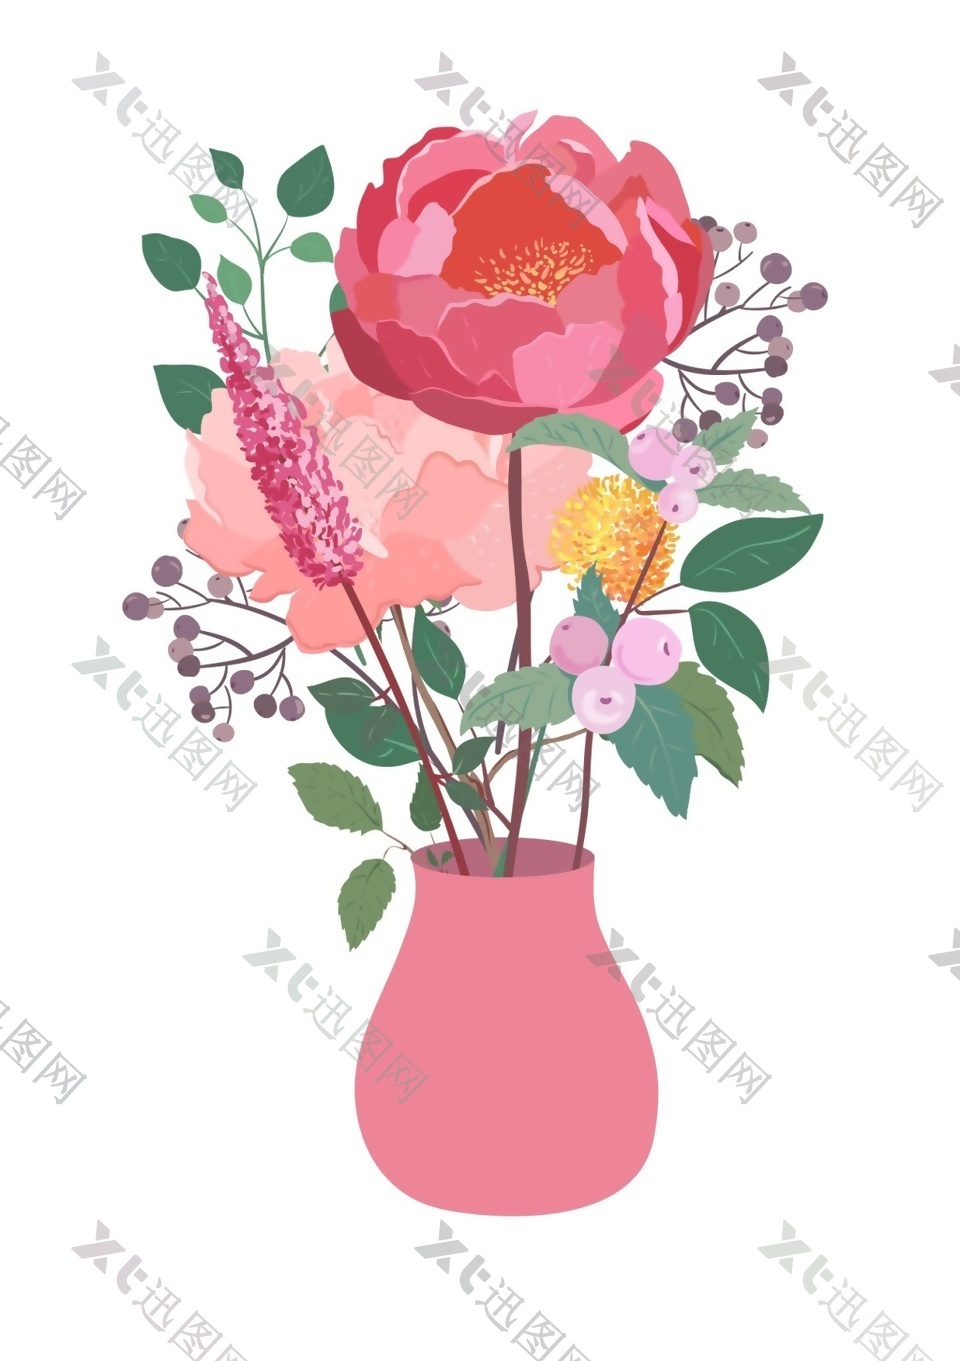 各式花卉种植花瓶卡通素材